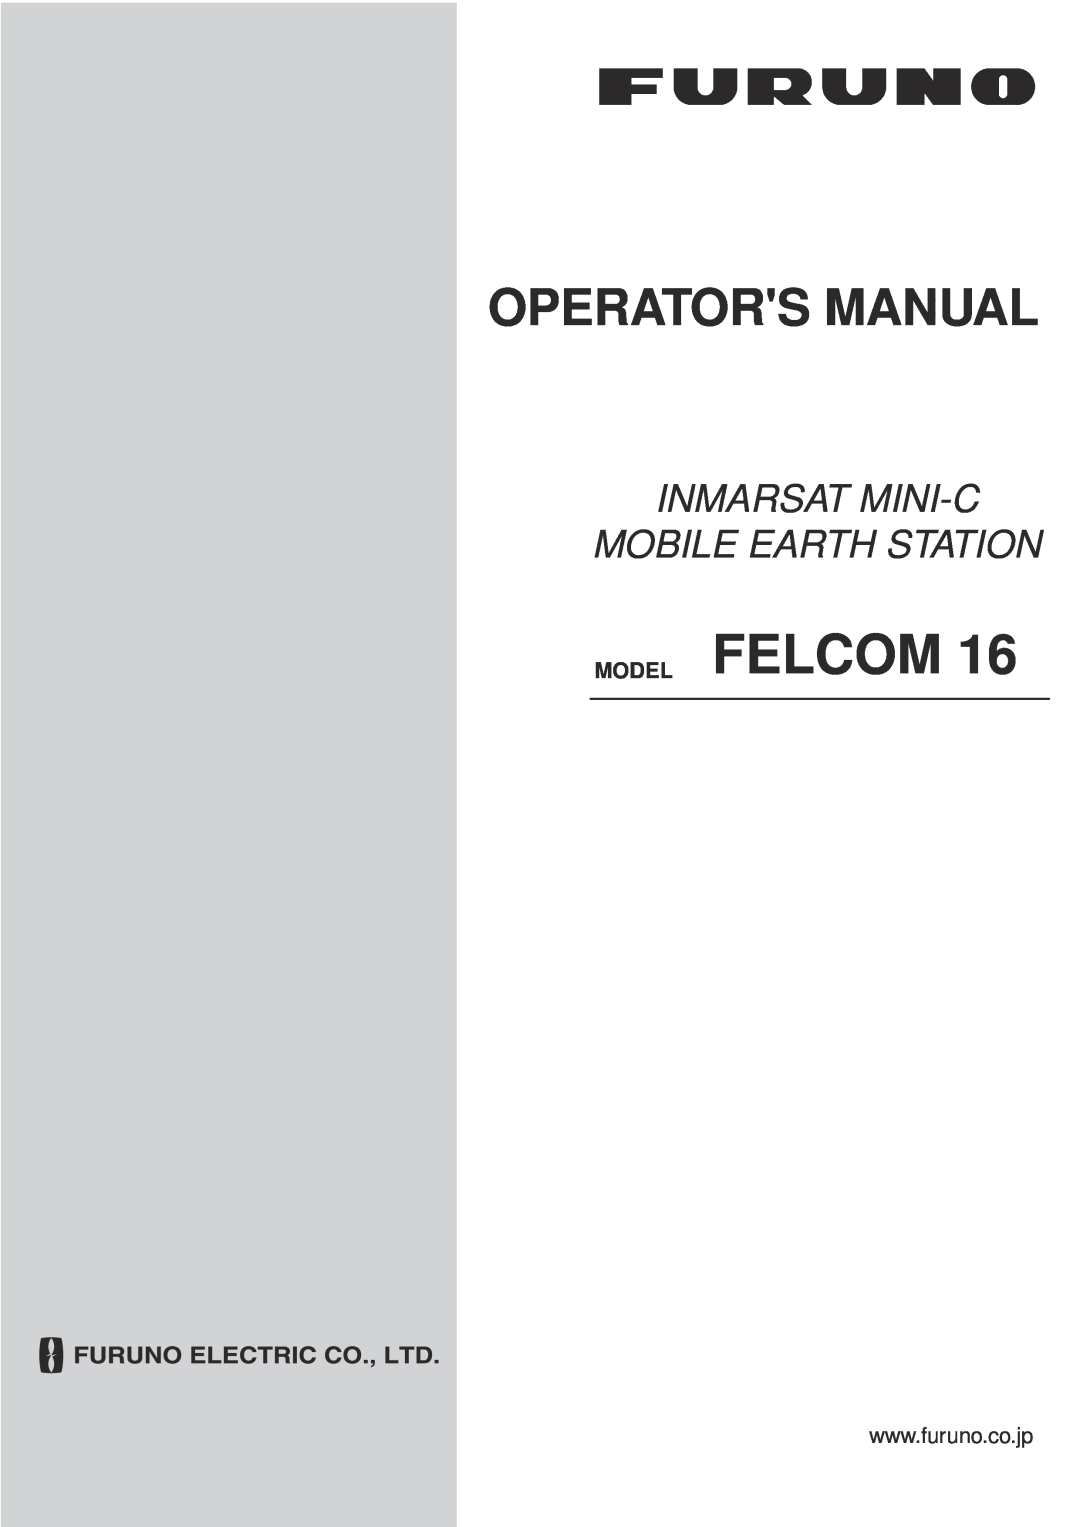 Furuno 16 manual Model Felcom, Operators Manual, Inmarsat Mini-C Mobile Earth Station 